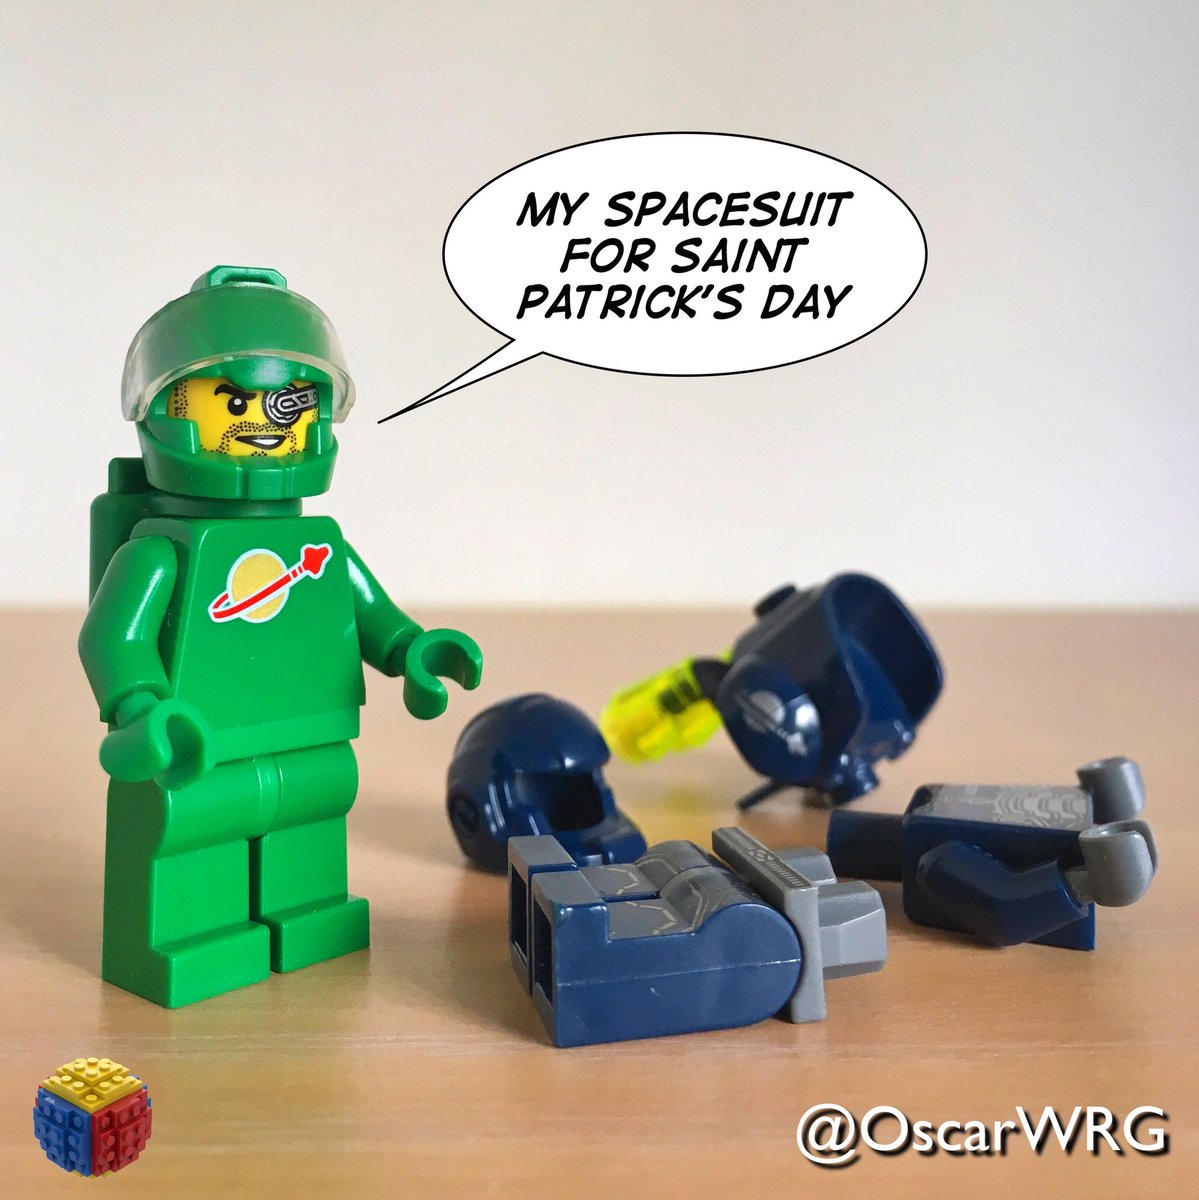 #LEGO_Galaxy_Patrol #LEGO #SaintPatricksDay #SaintPatricks #LEGOsaintPatricks #Spacesuit @LEGO_Group @DoSAinterntl